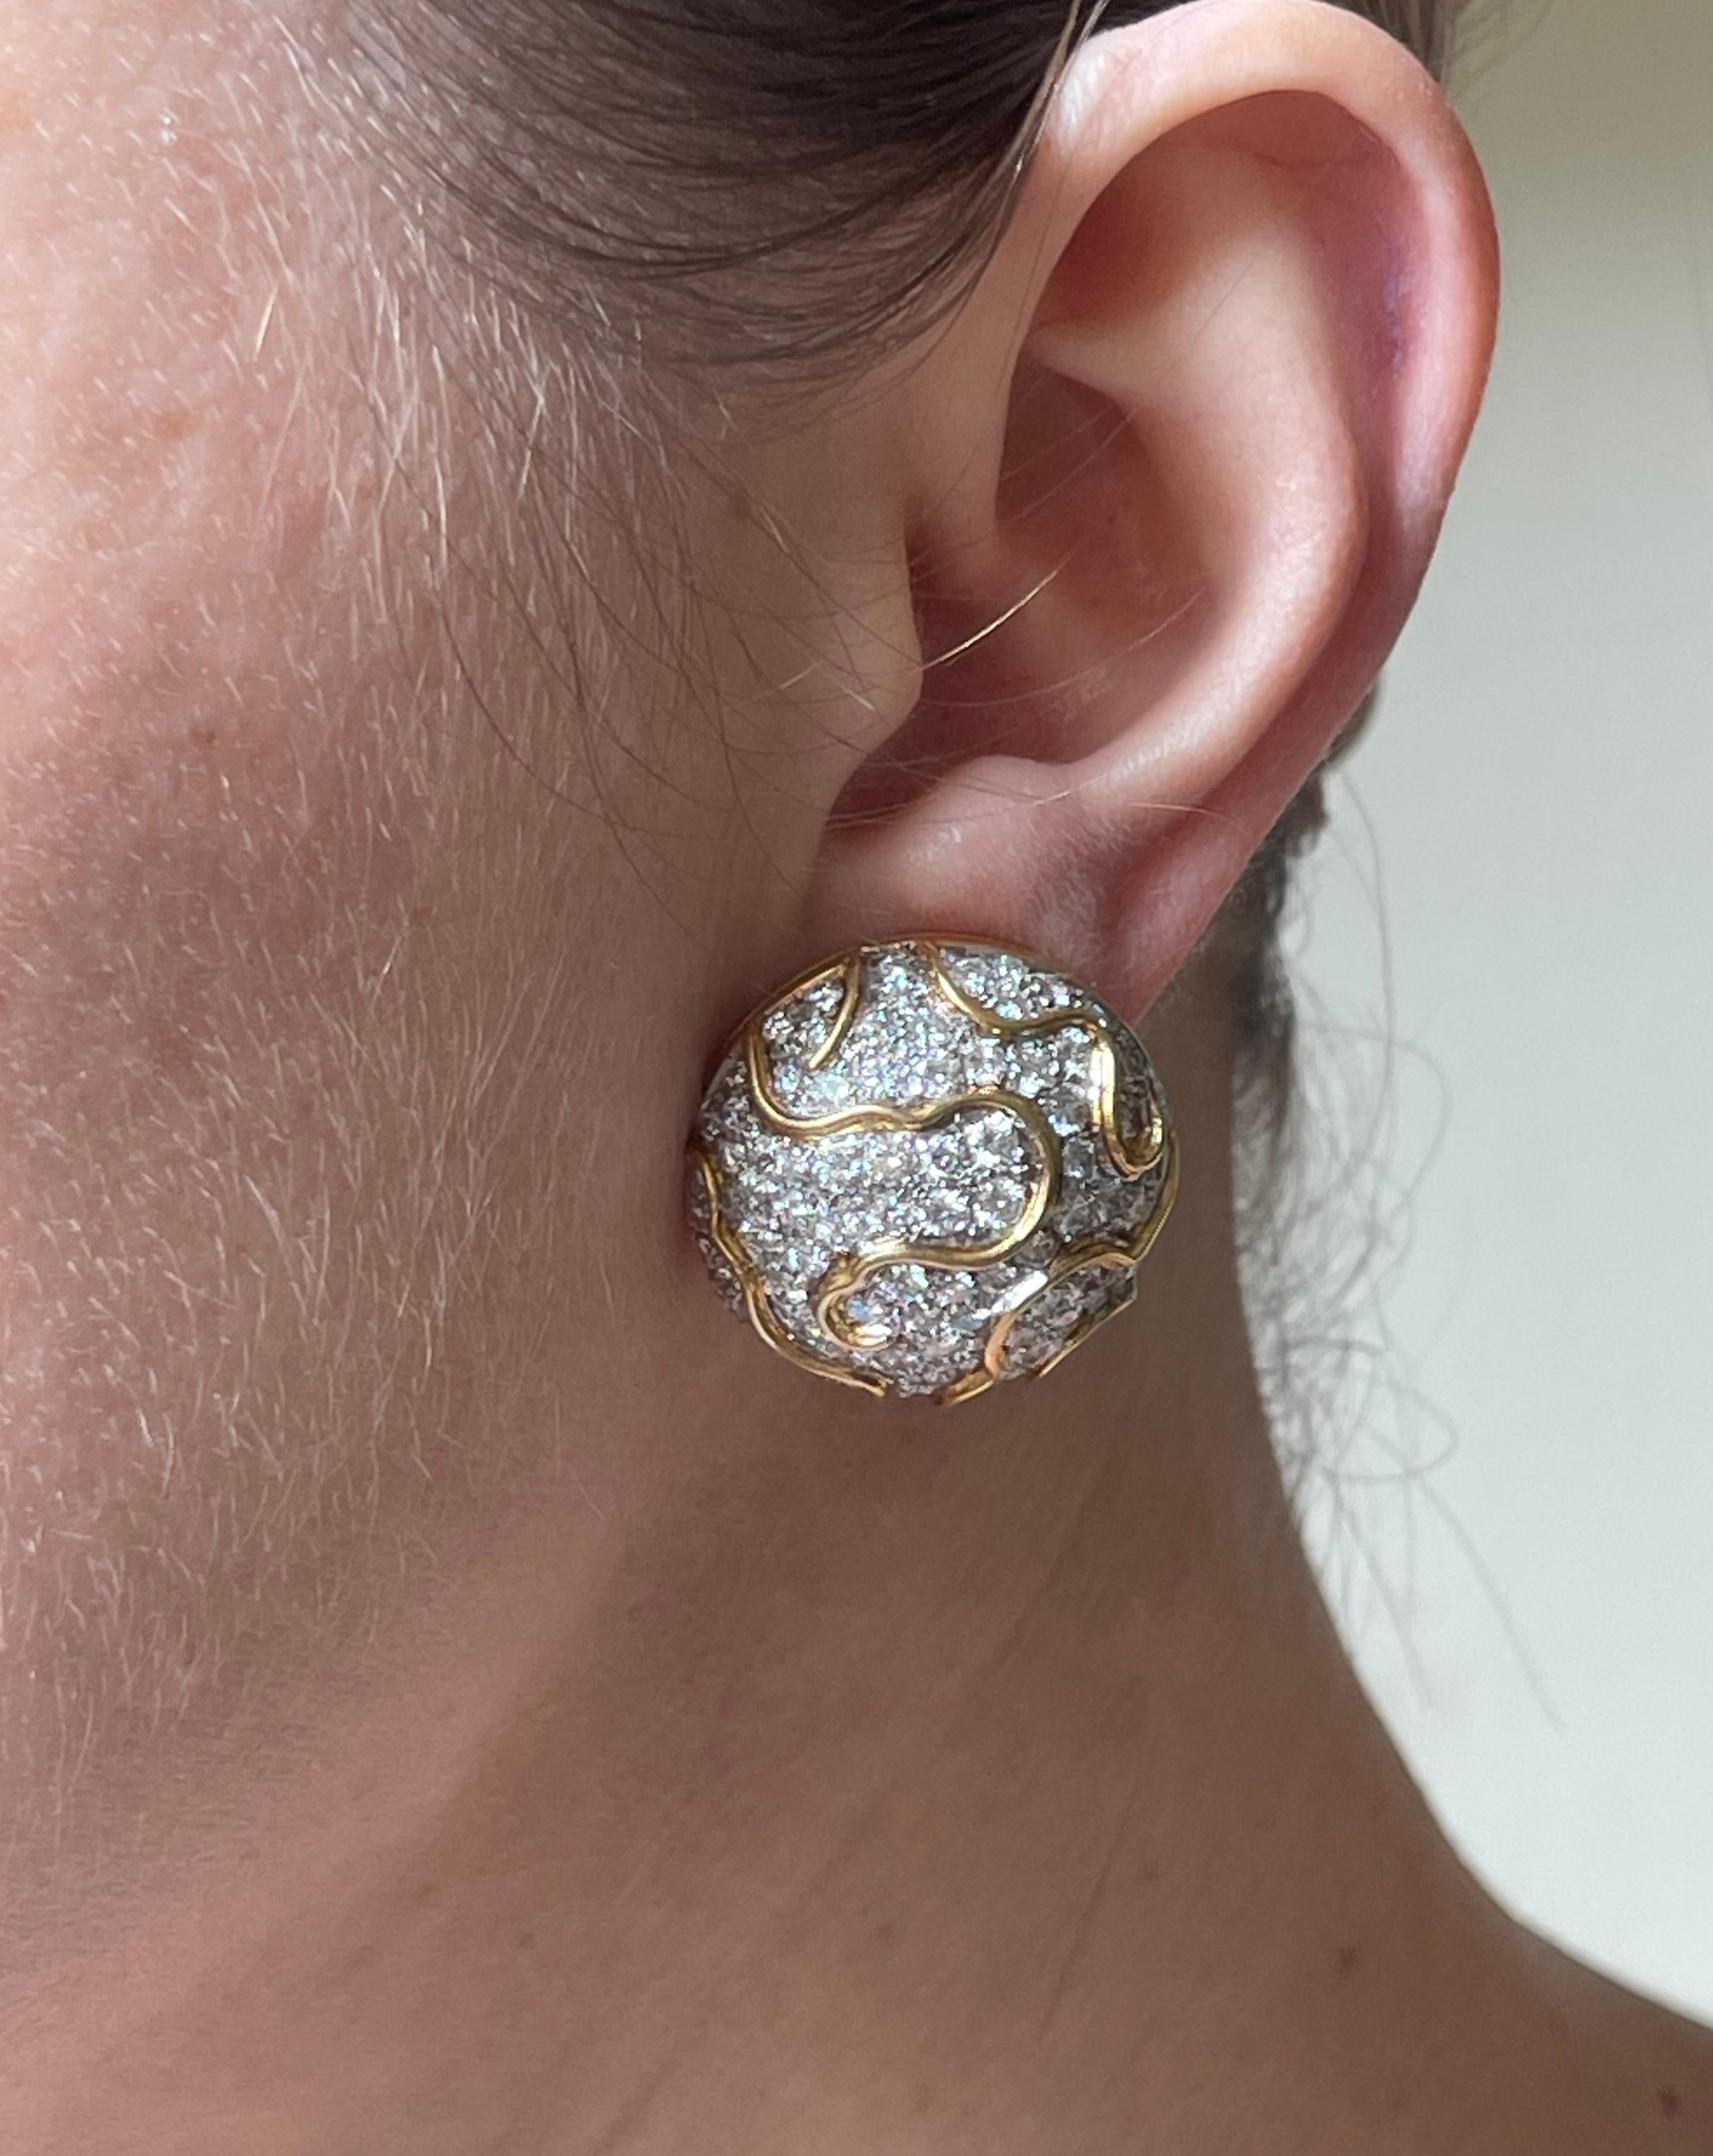 Paar Knopfohrringe aus 18 Karat Gold mit ca. 8ctw in GH/VS Diamanten. Die Ohrringe haben einen Durchmesser von 1